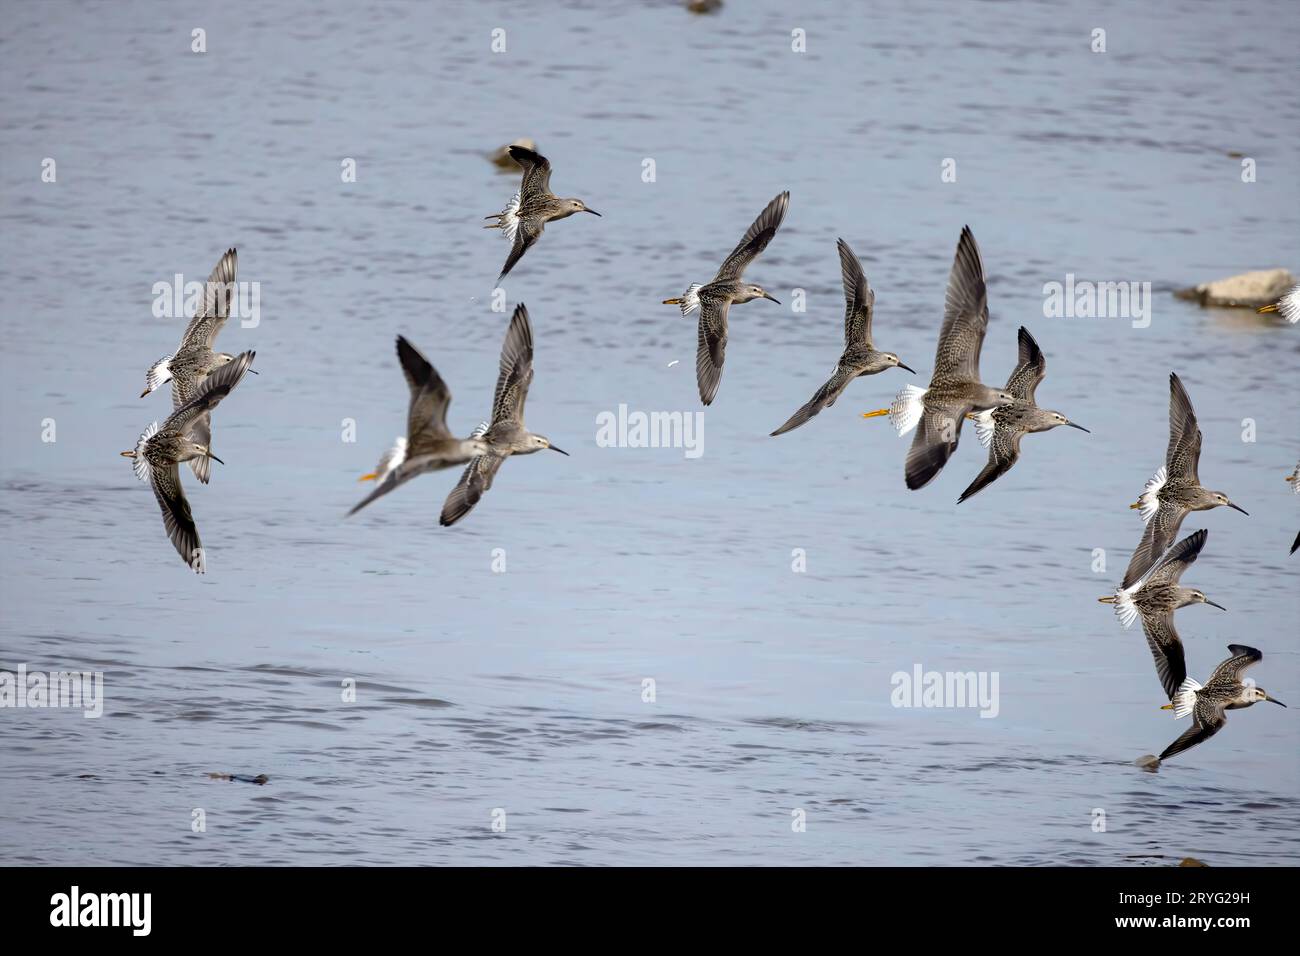 Flock of shorebirds in flight Stock Photo